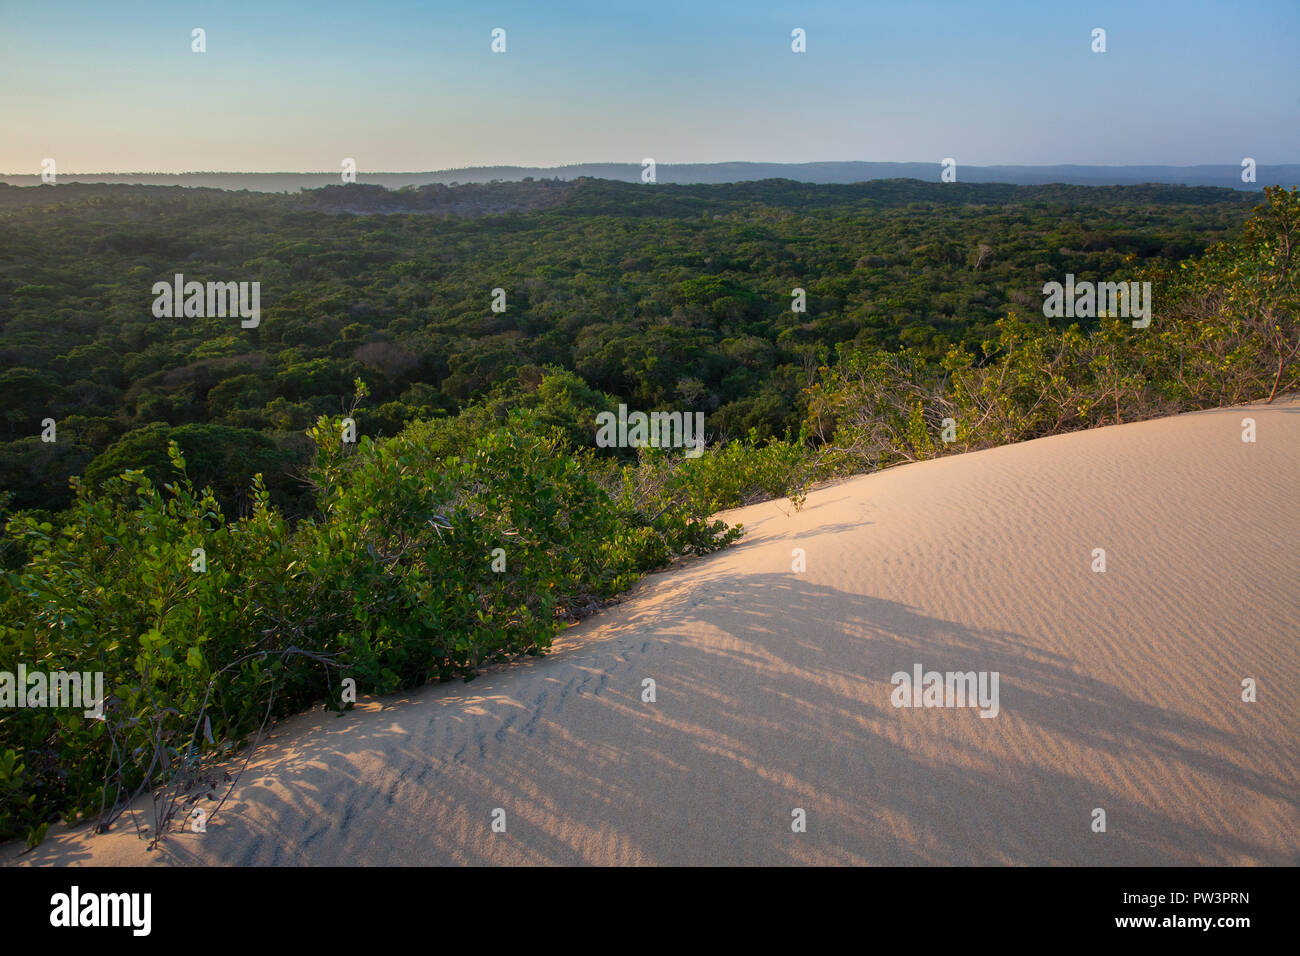 COASTAL DUNE FOREST at sunset, Dunes de Dovela, Inhambane, Mozambique Stock Photo